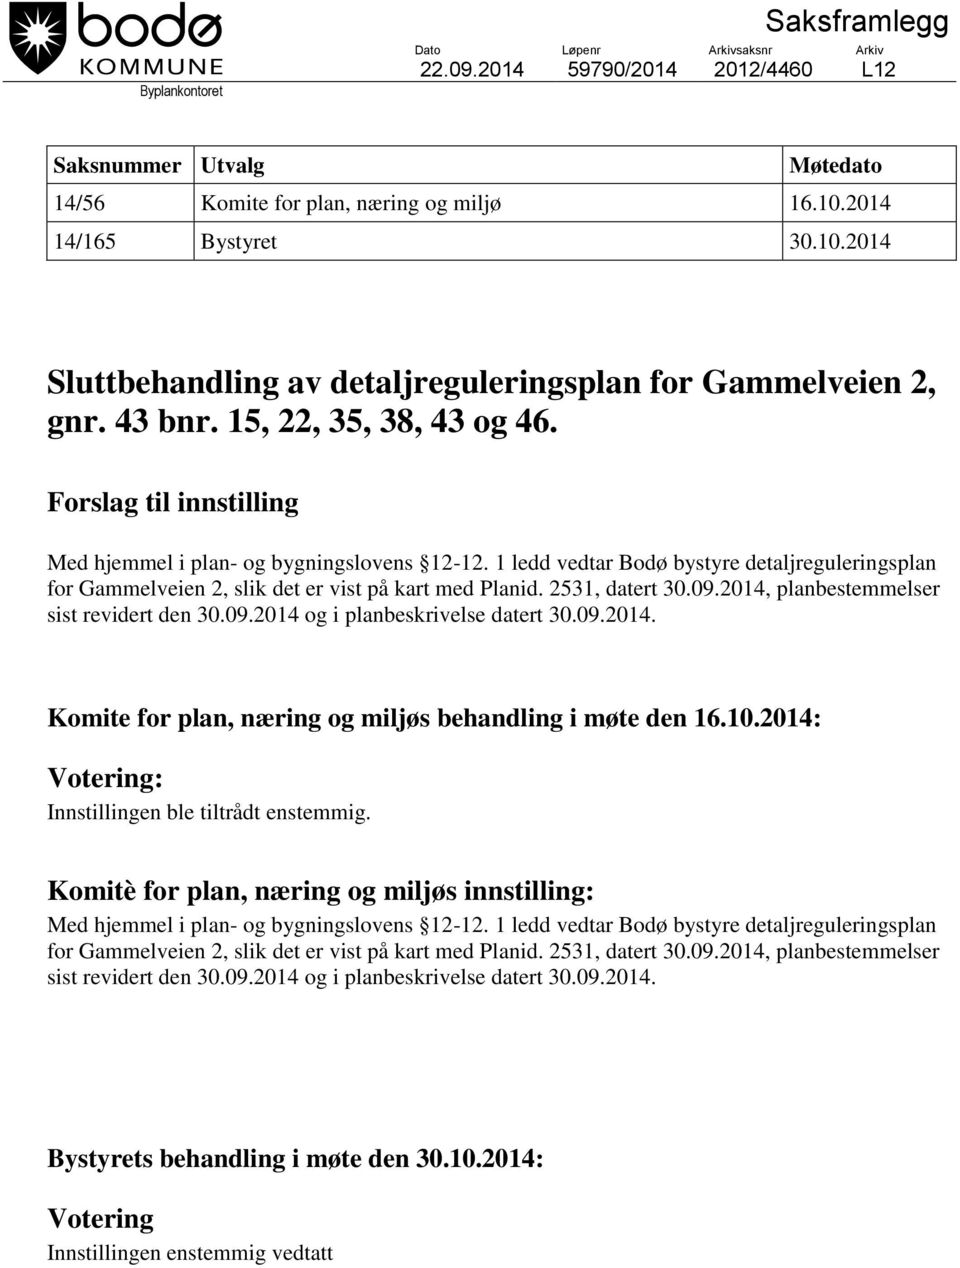 1 ledd vedtar Bodø bystyre detaljreguleringsplan for Gammelveien 2, slik det er vist på kart med Planid. 2531, datert 30.09.2014, planbestemmelser sist revidert den 30.09.2014 og i planbeskrivelse datert 30.